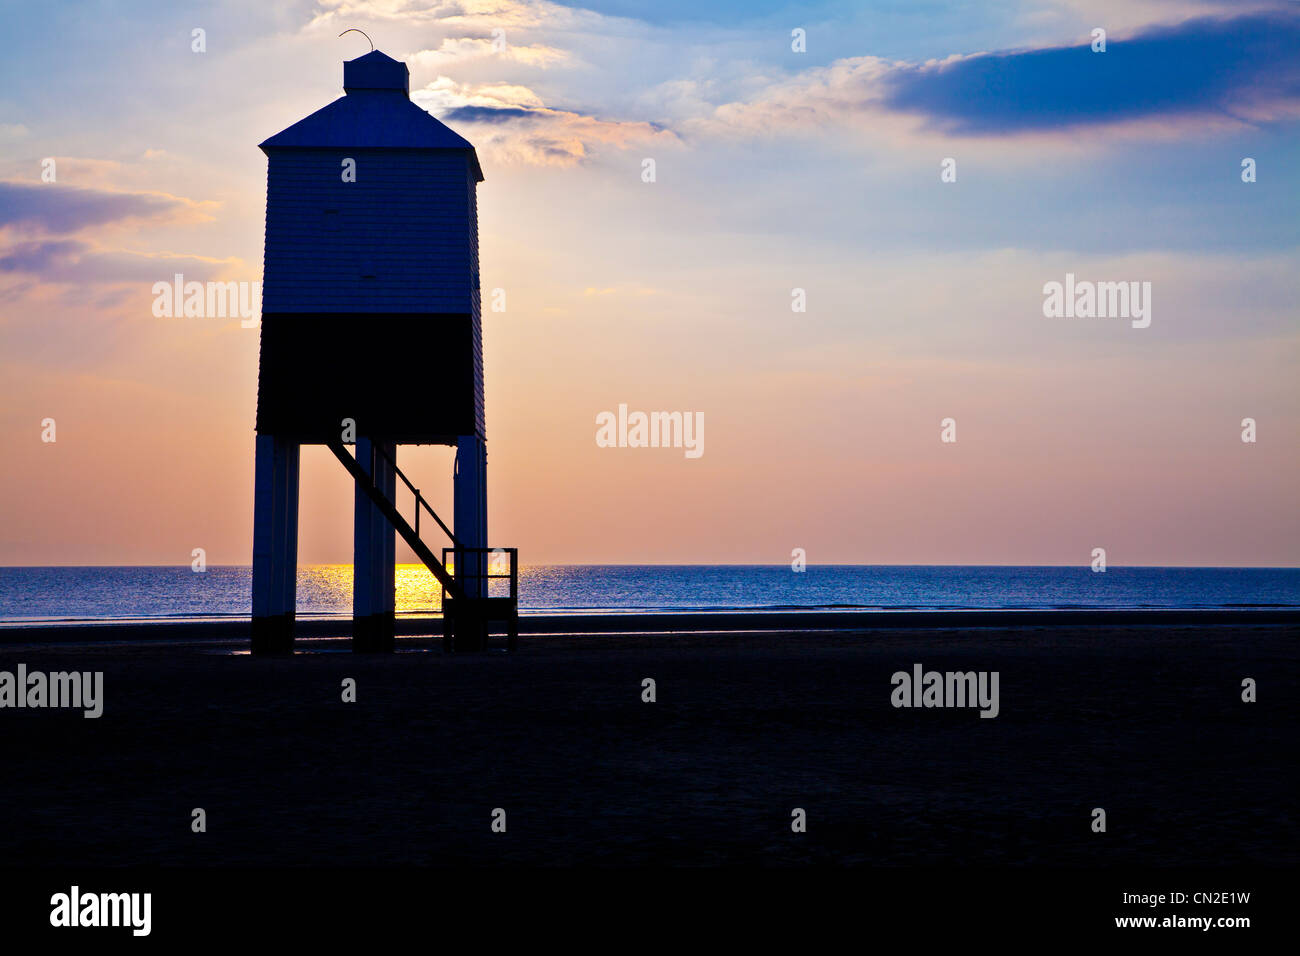 Un contre jour tourné contre la lumière de l'inhabituelle phare sur pilotis à Burnham-on-Sea, Somerset, England, UK, au coucher du soleil. Banque D'Images